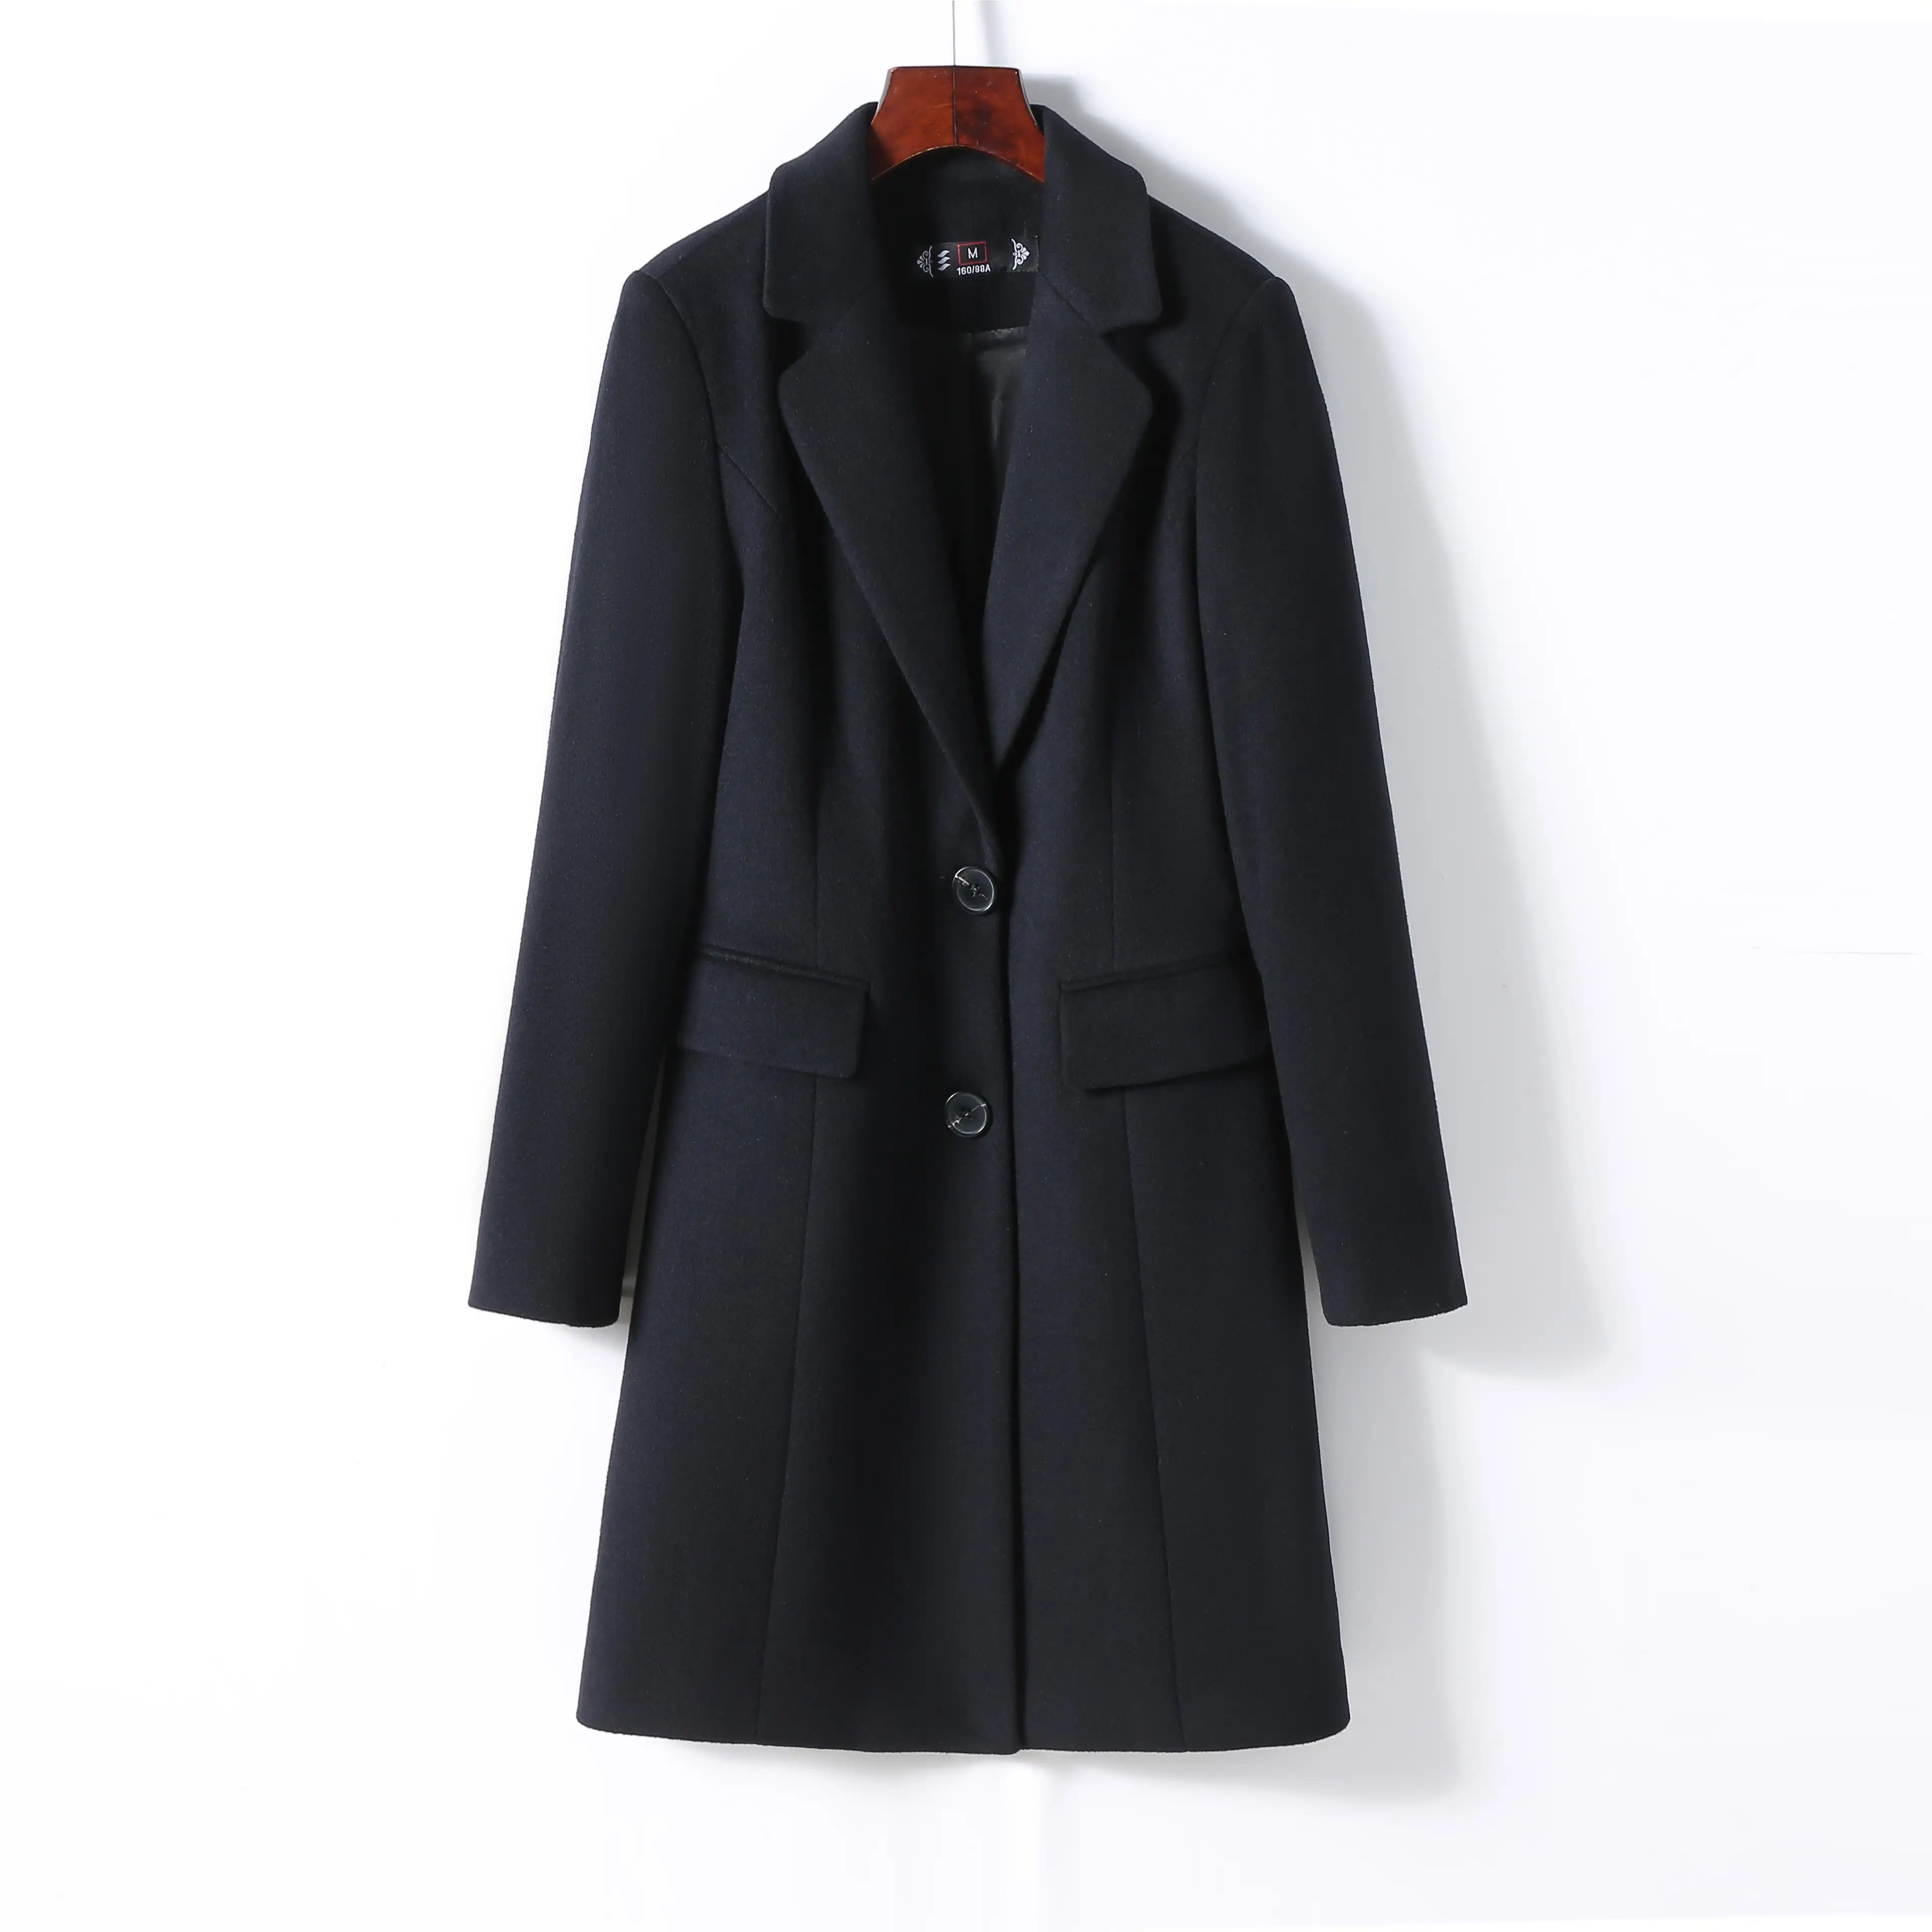 Longo elegante terno formal único breasted 2 botão design de moda lã Longo Trench Coats Para As Mulheres inverno desgaste casaco